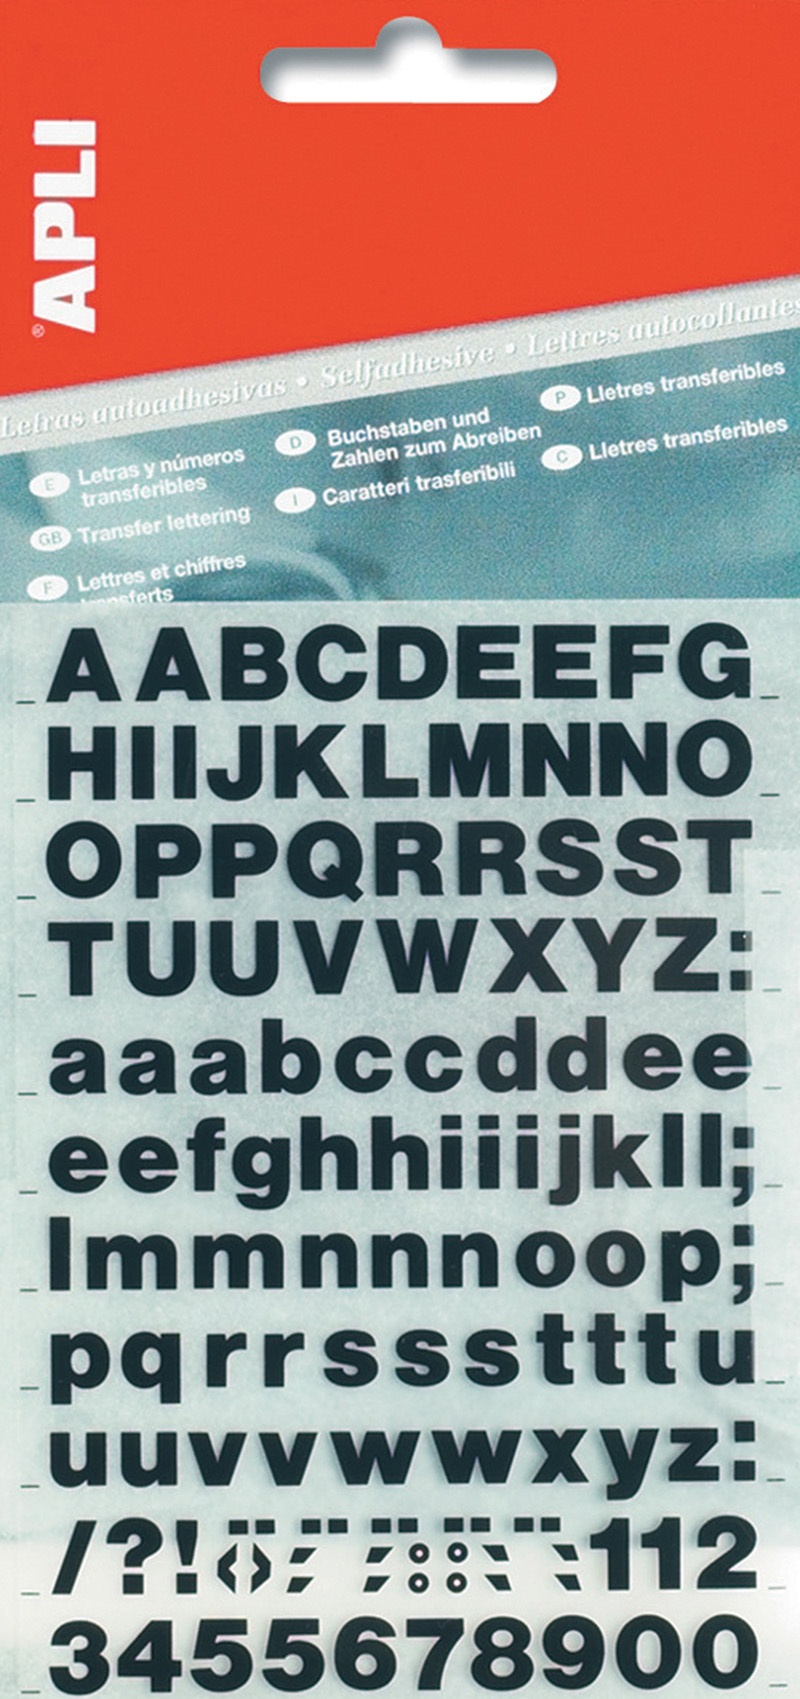 Self-adhesive Letters APLI, 40mm, black